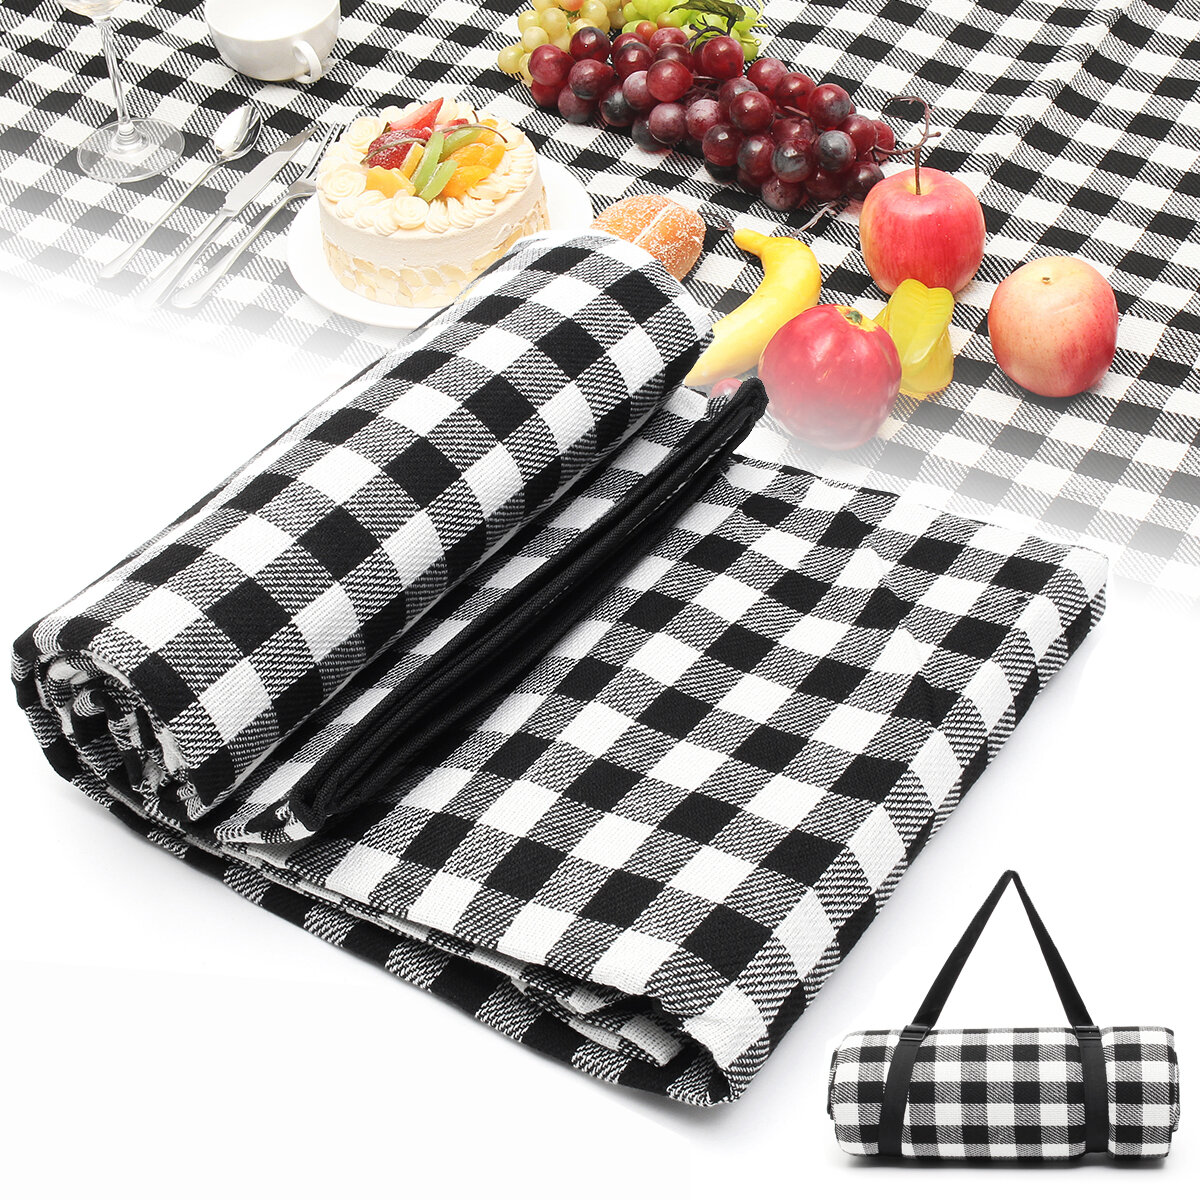 200X200 CM Su Geçirmez Ekstra Büyük Piknik Battaniye Halı Katlanır Mat Premium Kaşmir Siyah Halı Makinesi Yıkanabilir Mat Aile için Plaj Outdoor